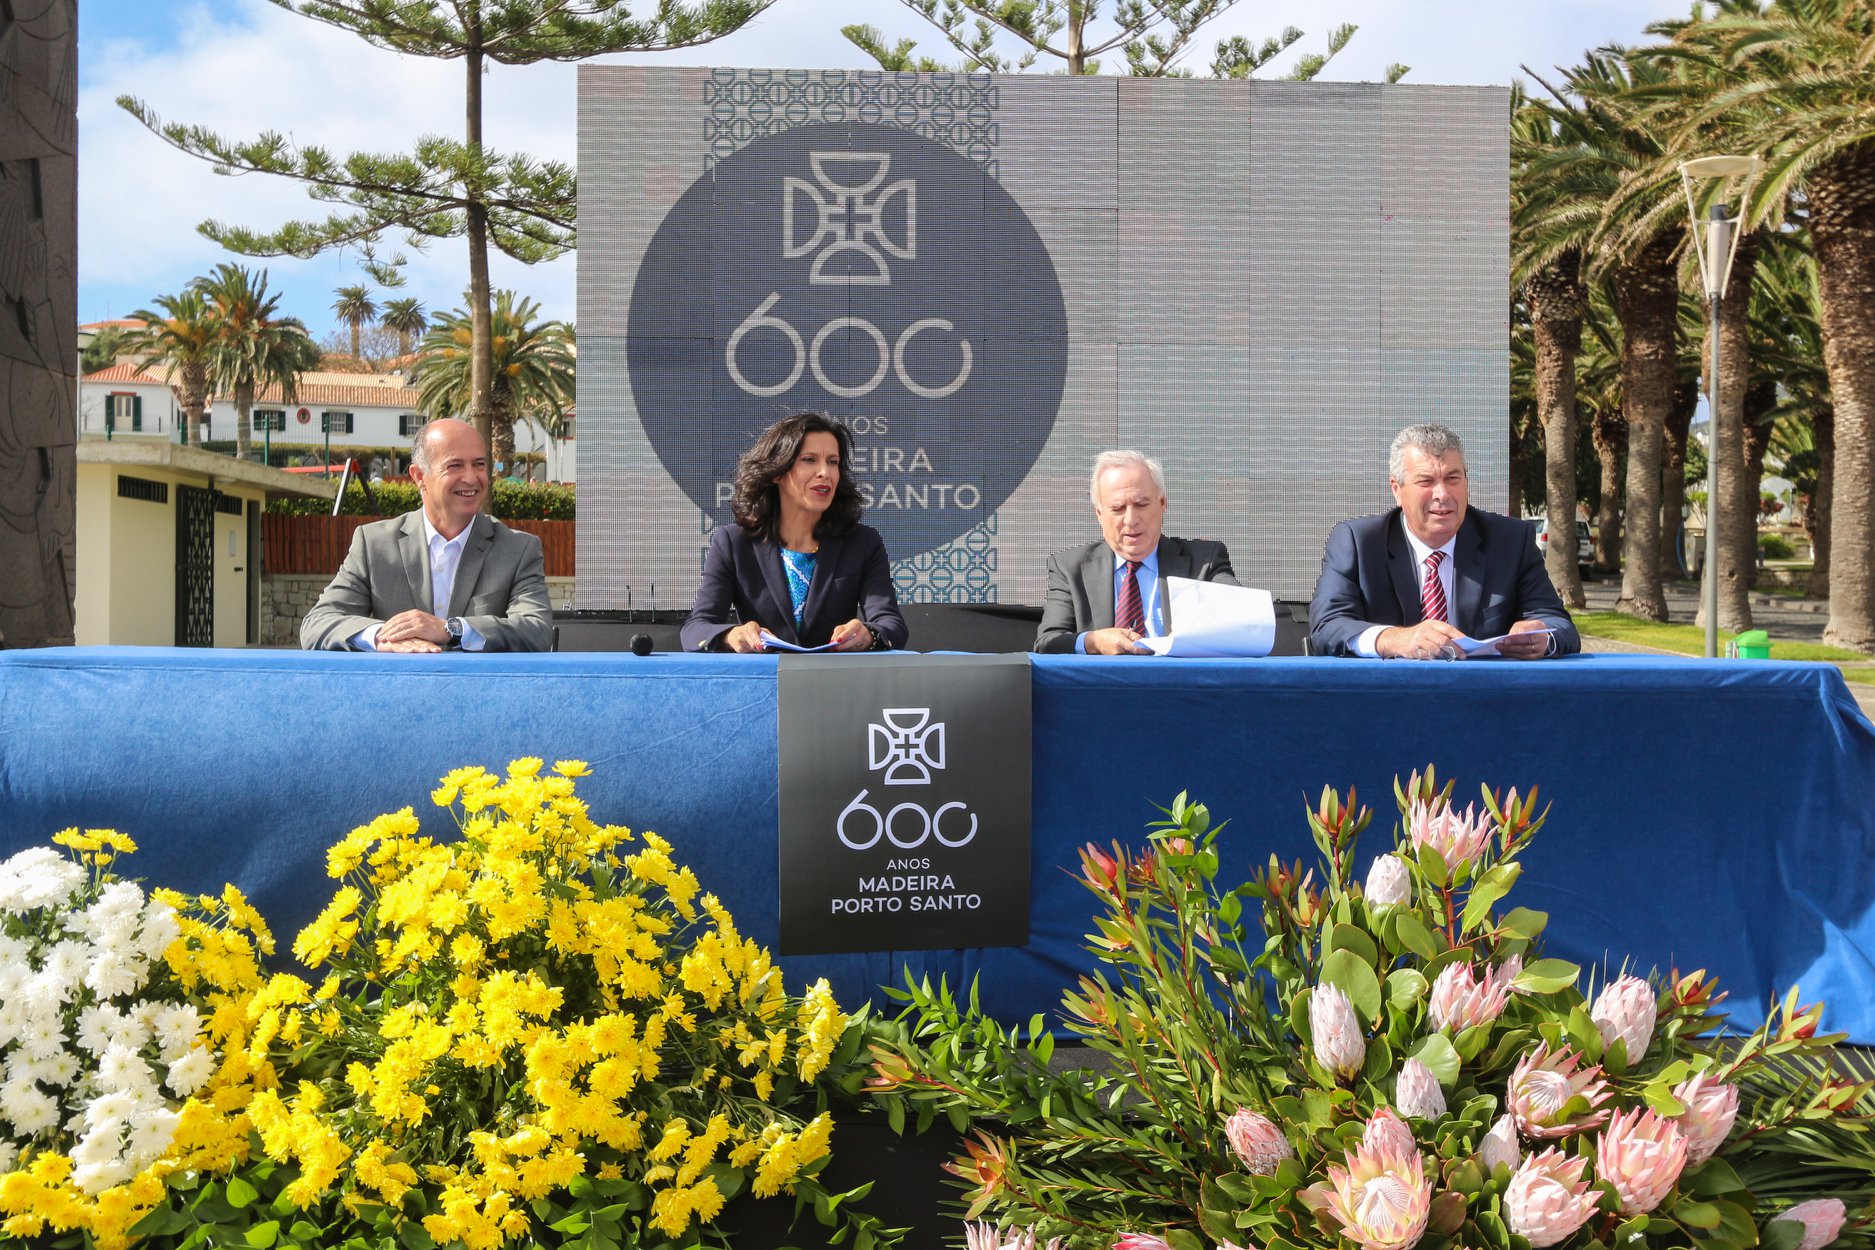 Programa Oficial dos 600 Anos apresentado no Porto Santo